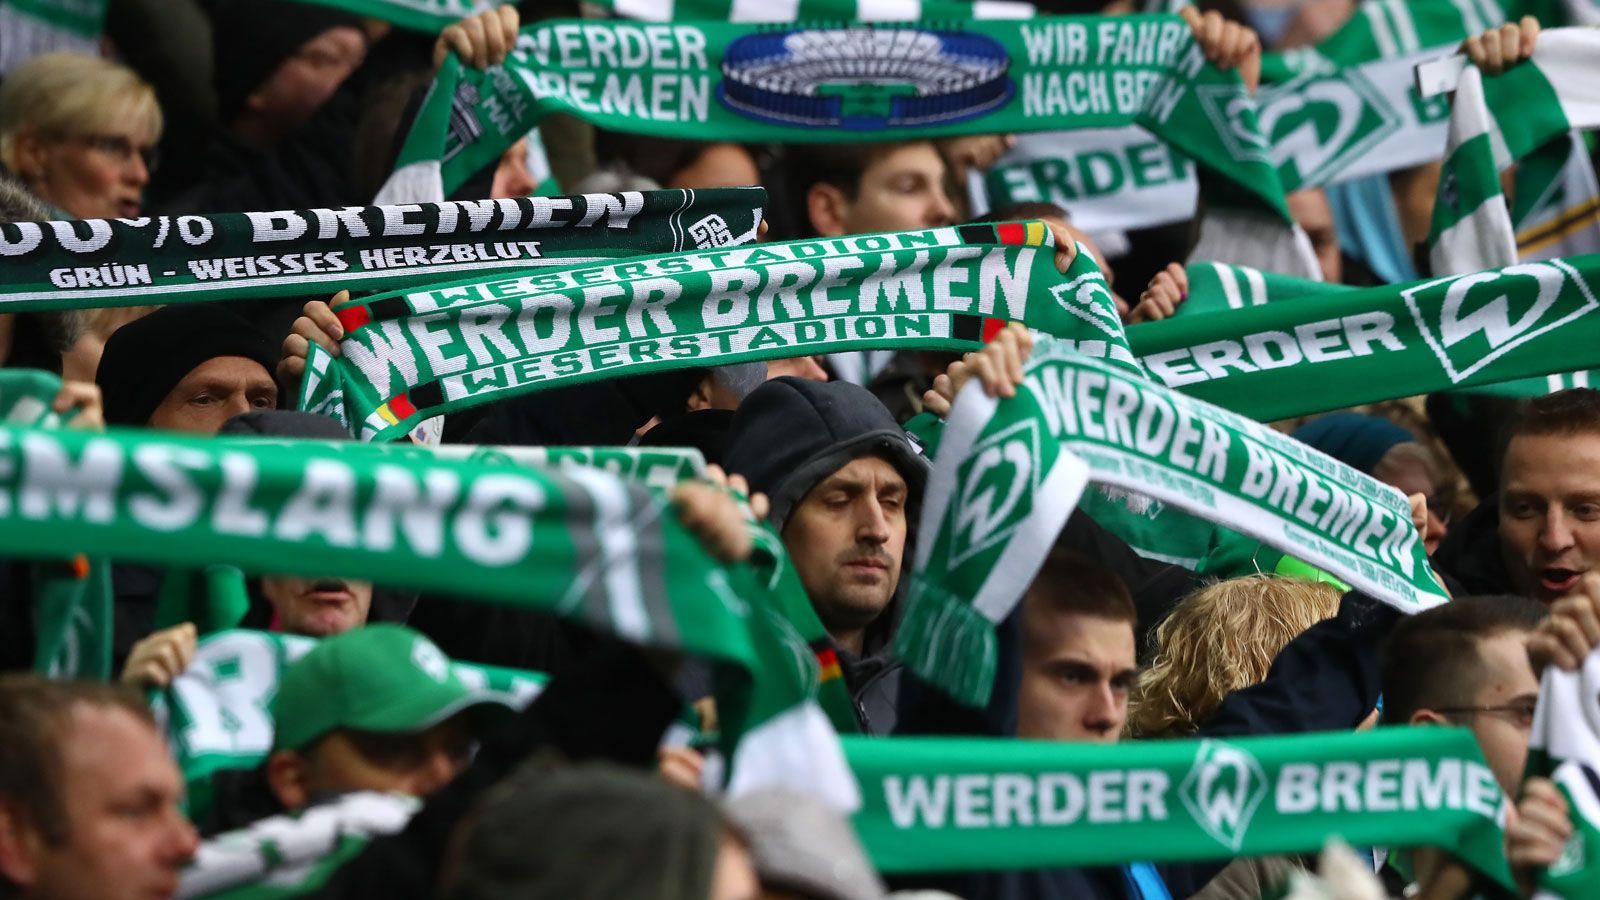 
                <strong>SV Werder Bremen </strong><br>
                Erwachsene (18-59 Jahre): 84 Euro Senioren (ab 60 Jahre): 48 EuroJugendliche (bis 17 Jahre), Schüler, Studenten, Azubis, Wehrdienstleistende: 36 Euro
              